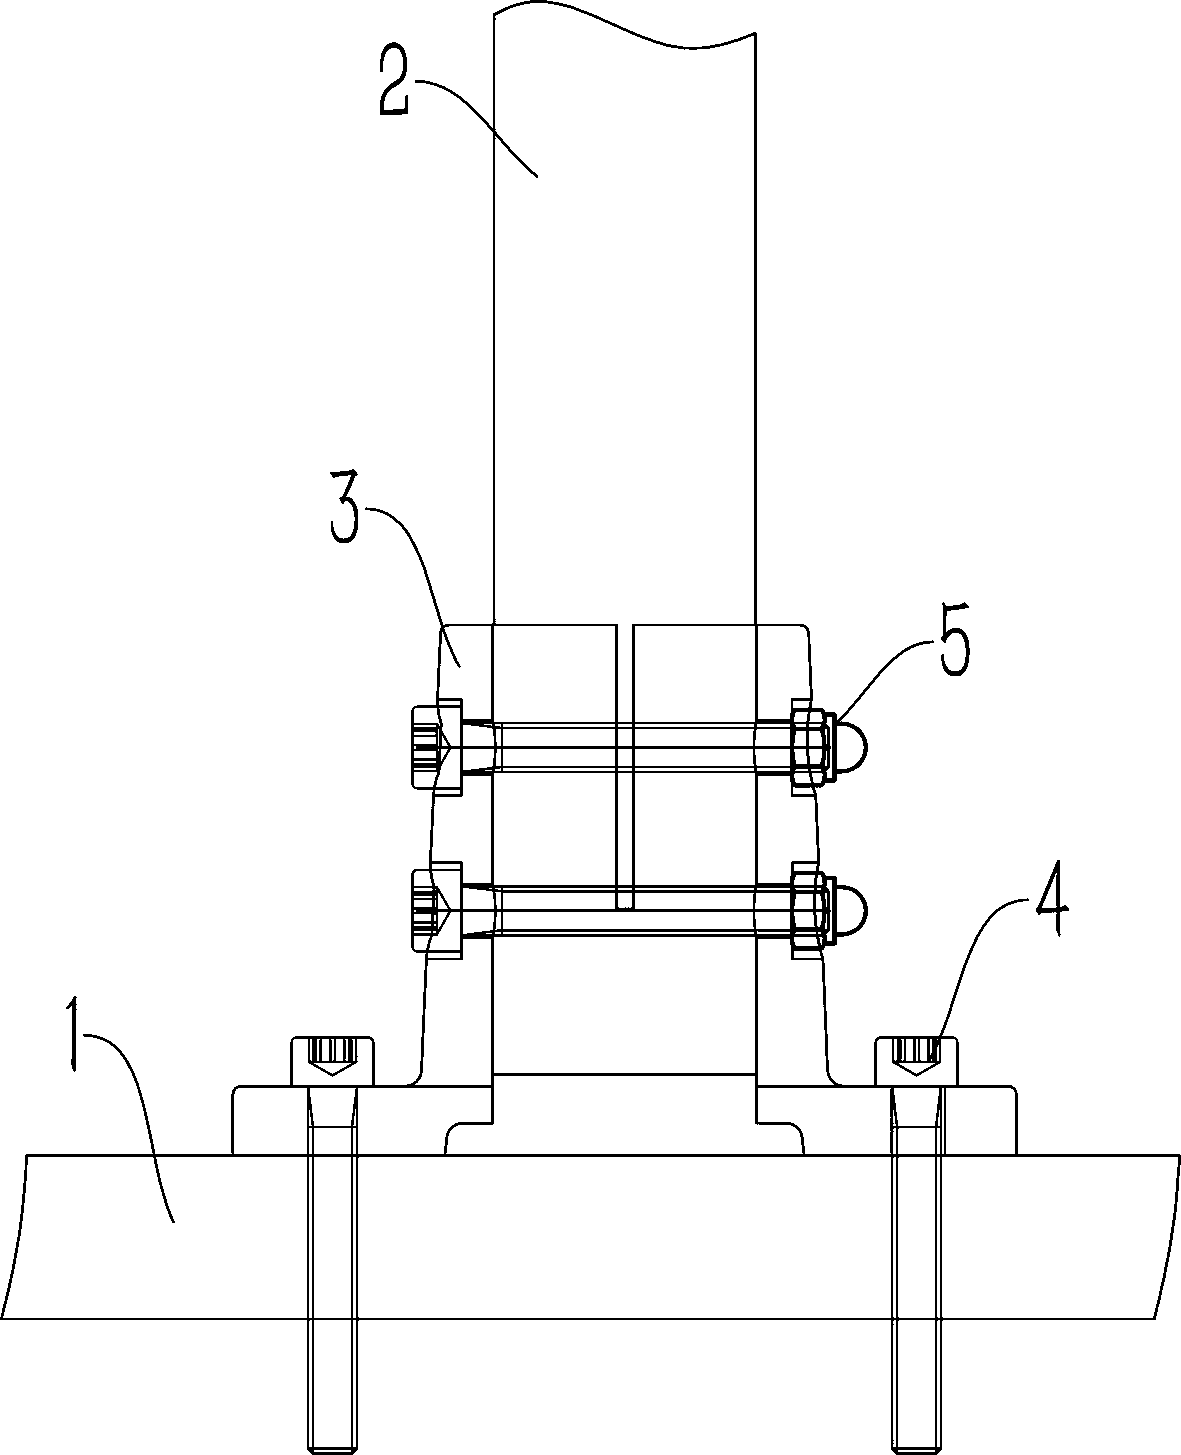 Novel adjustable armrest rod connecting structure